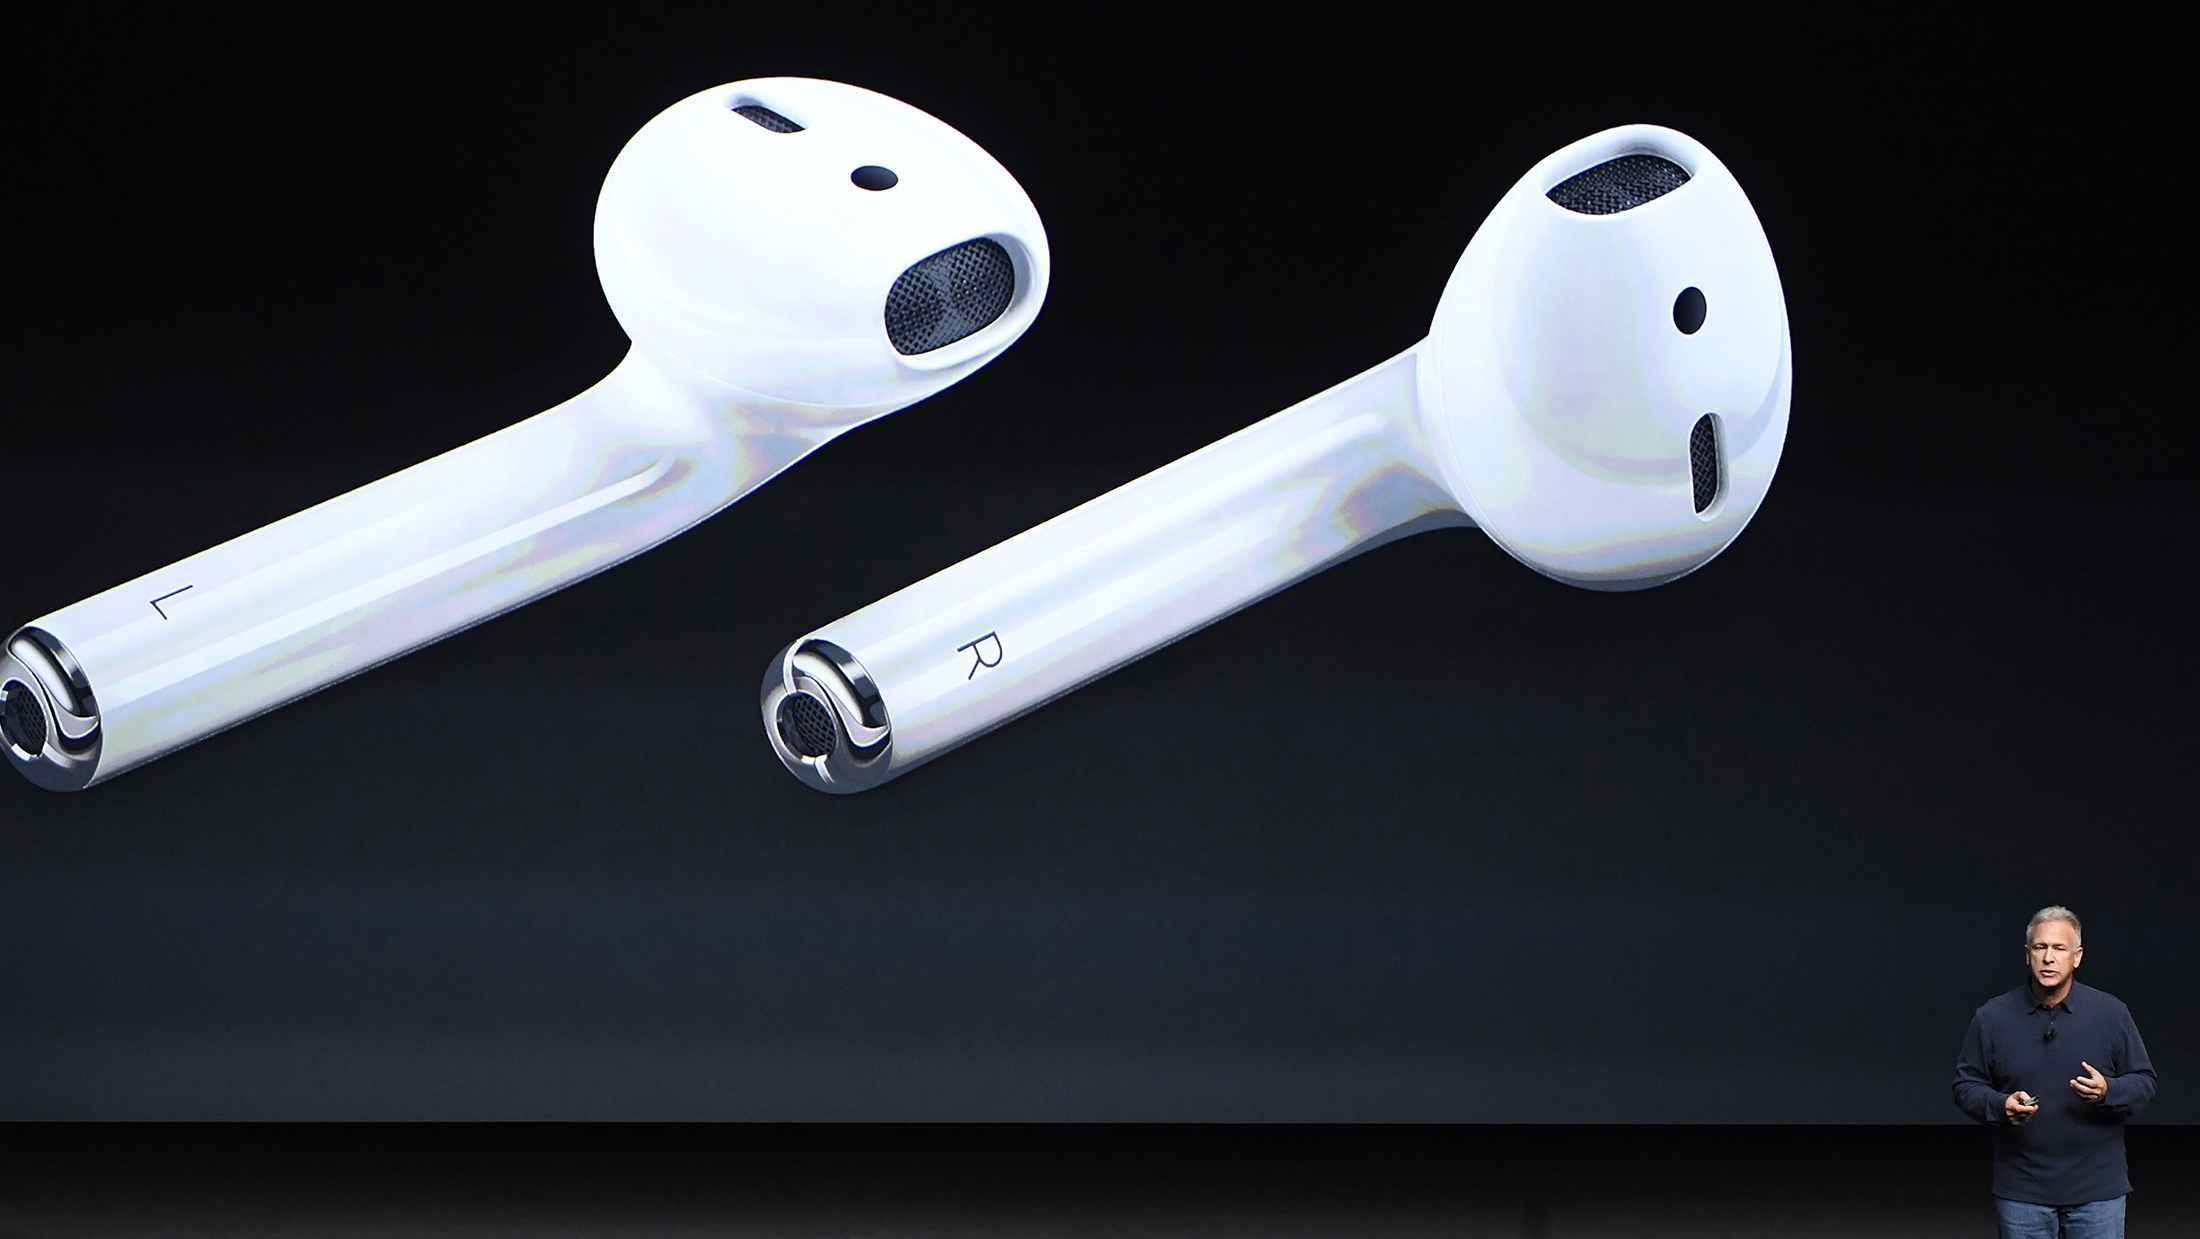 苹果推出无线耳机AirPods 开启配件销售新来源